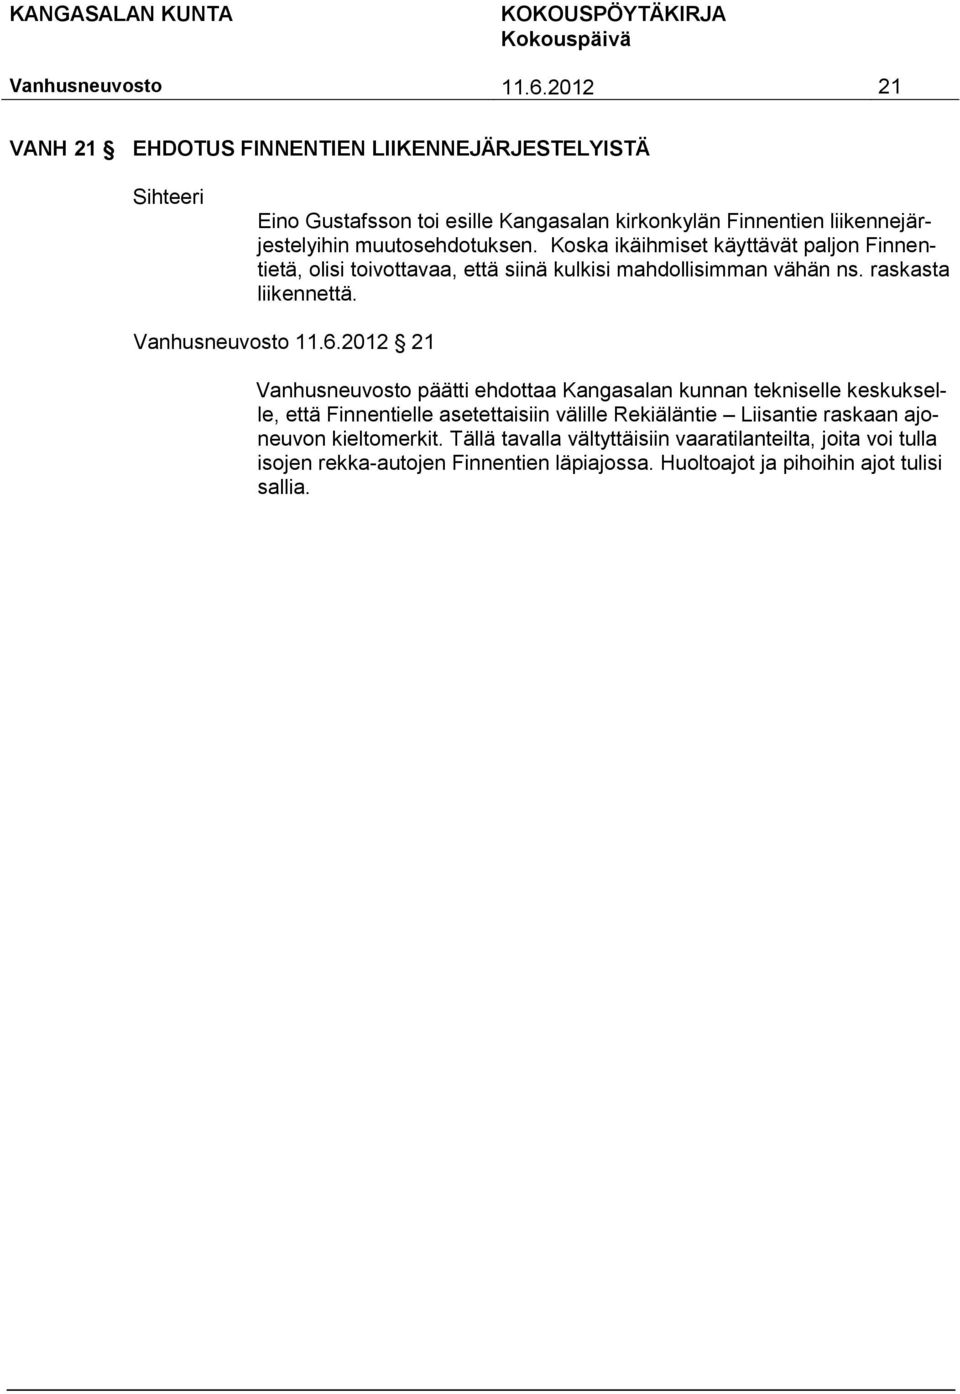 6.2012 21 päätti ehdottaa Kangasalan kunnan tekniselle keskukselle, että Finnentielle asetettaisiin välille Rekiäläntie Liisantie raskaan ajoneuvon